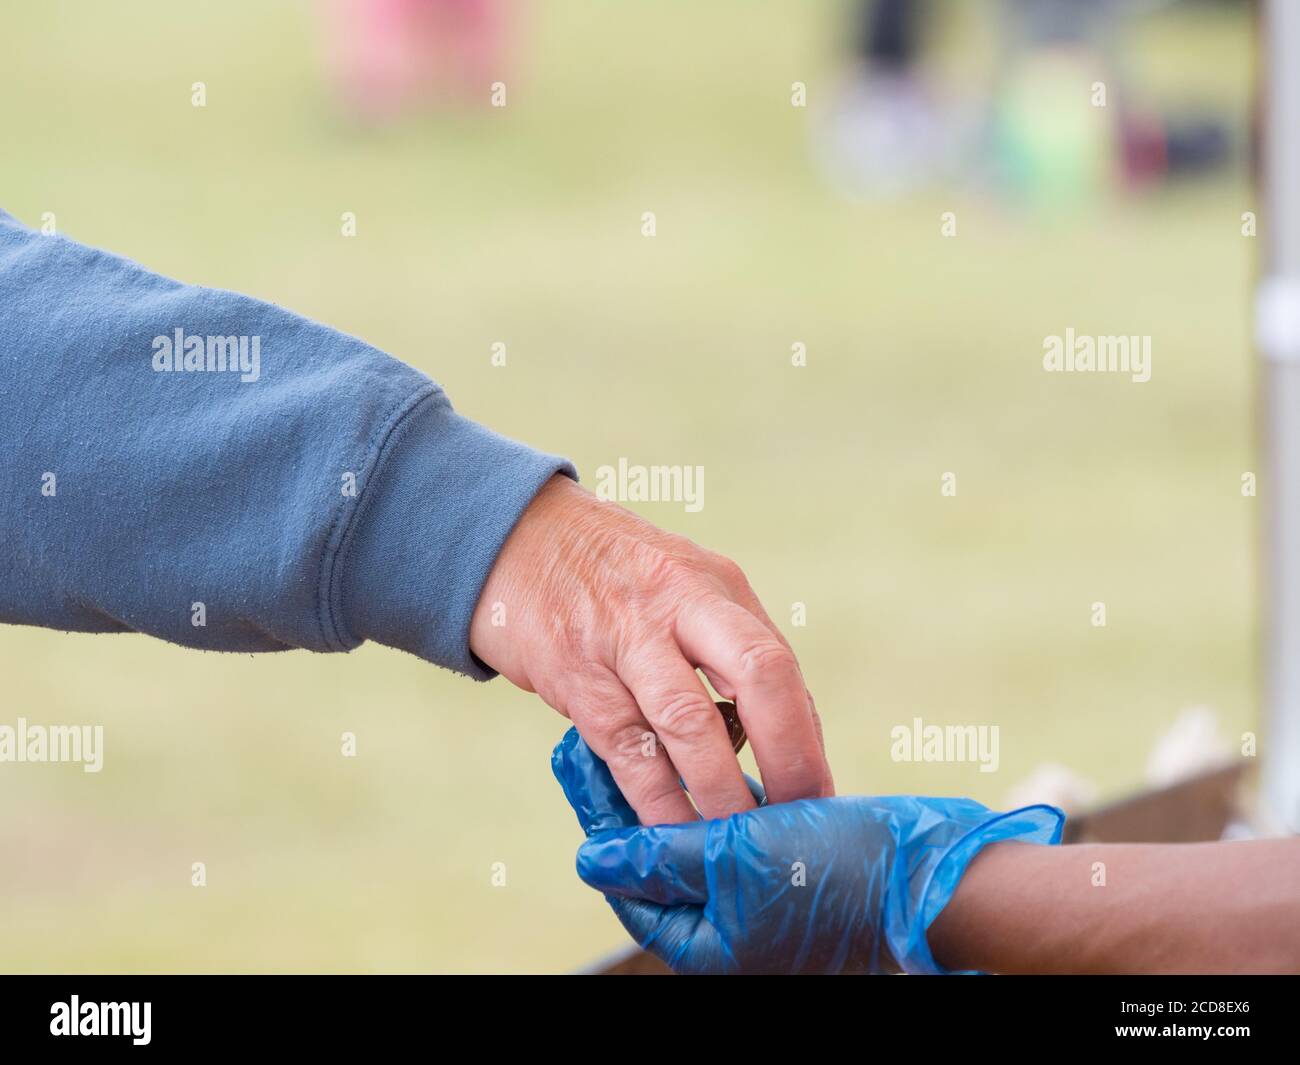 Una mano del cliente pone el dinero en una mano del sostenedor de la tienda usando un guante de higiene azul Foto de stock